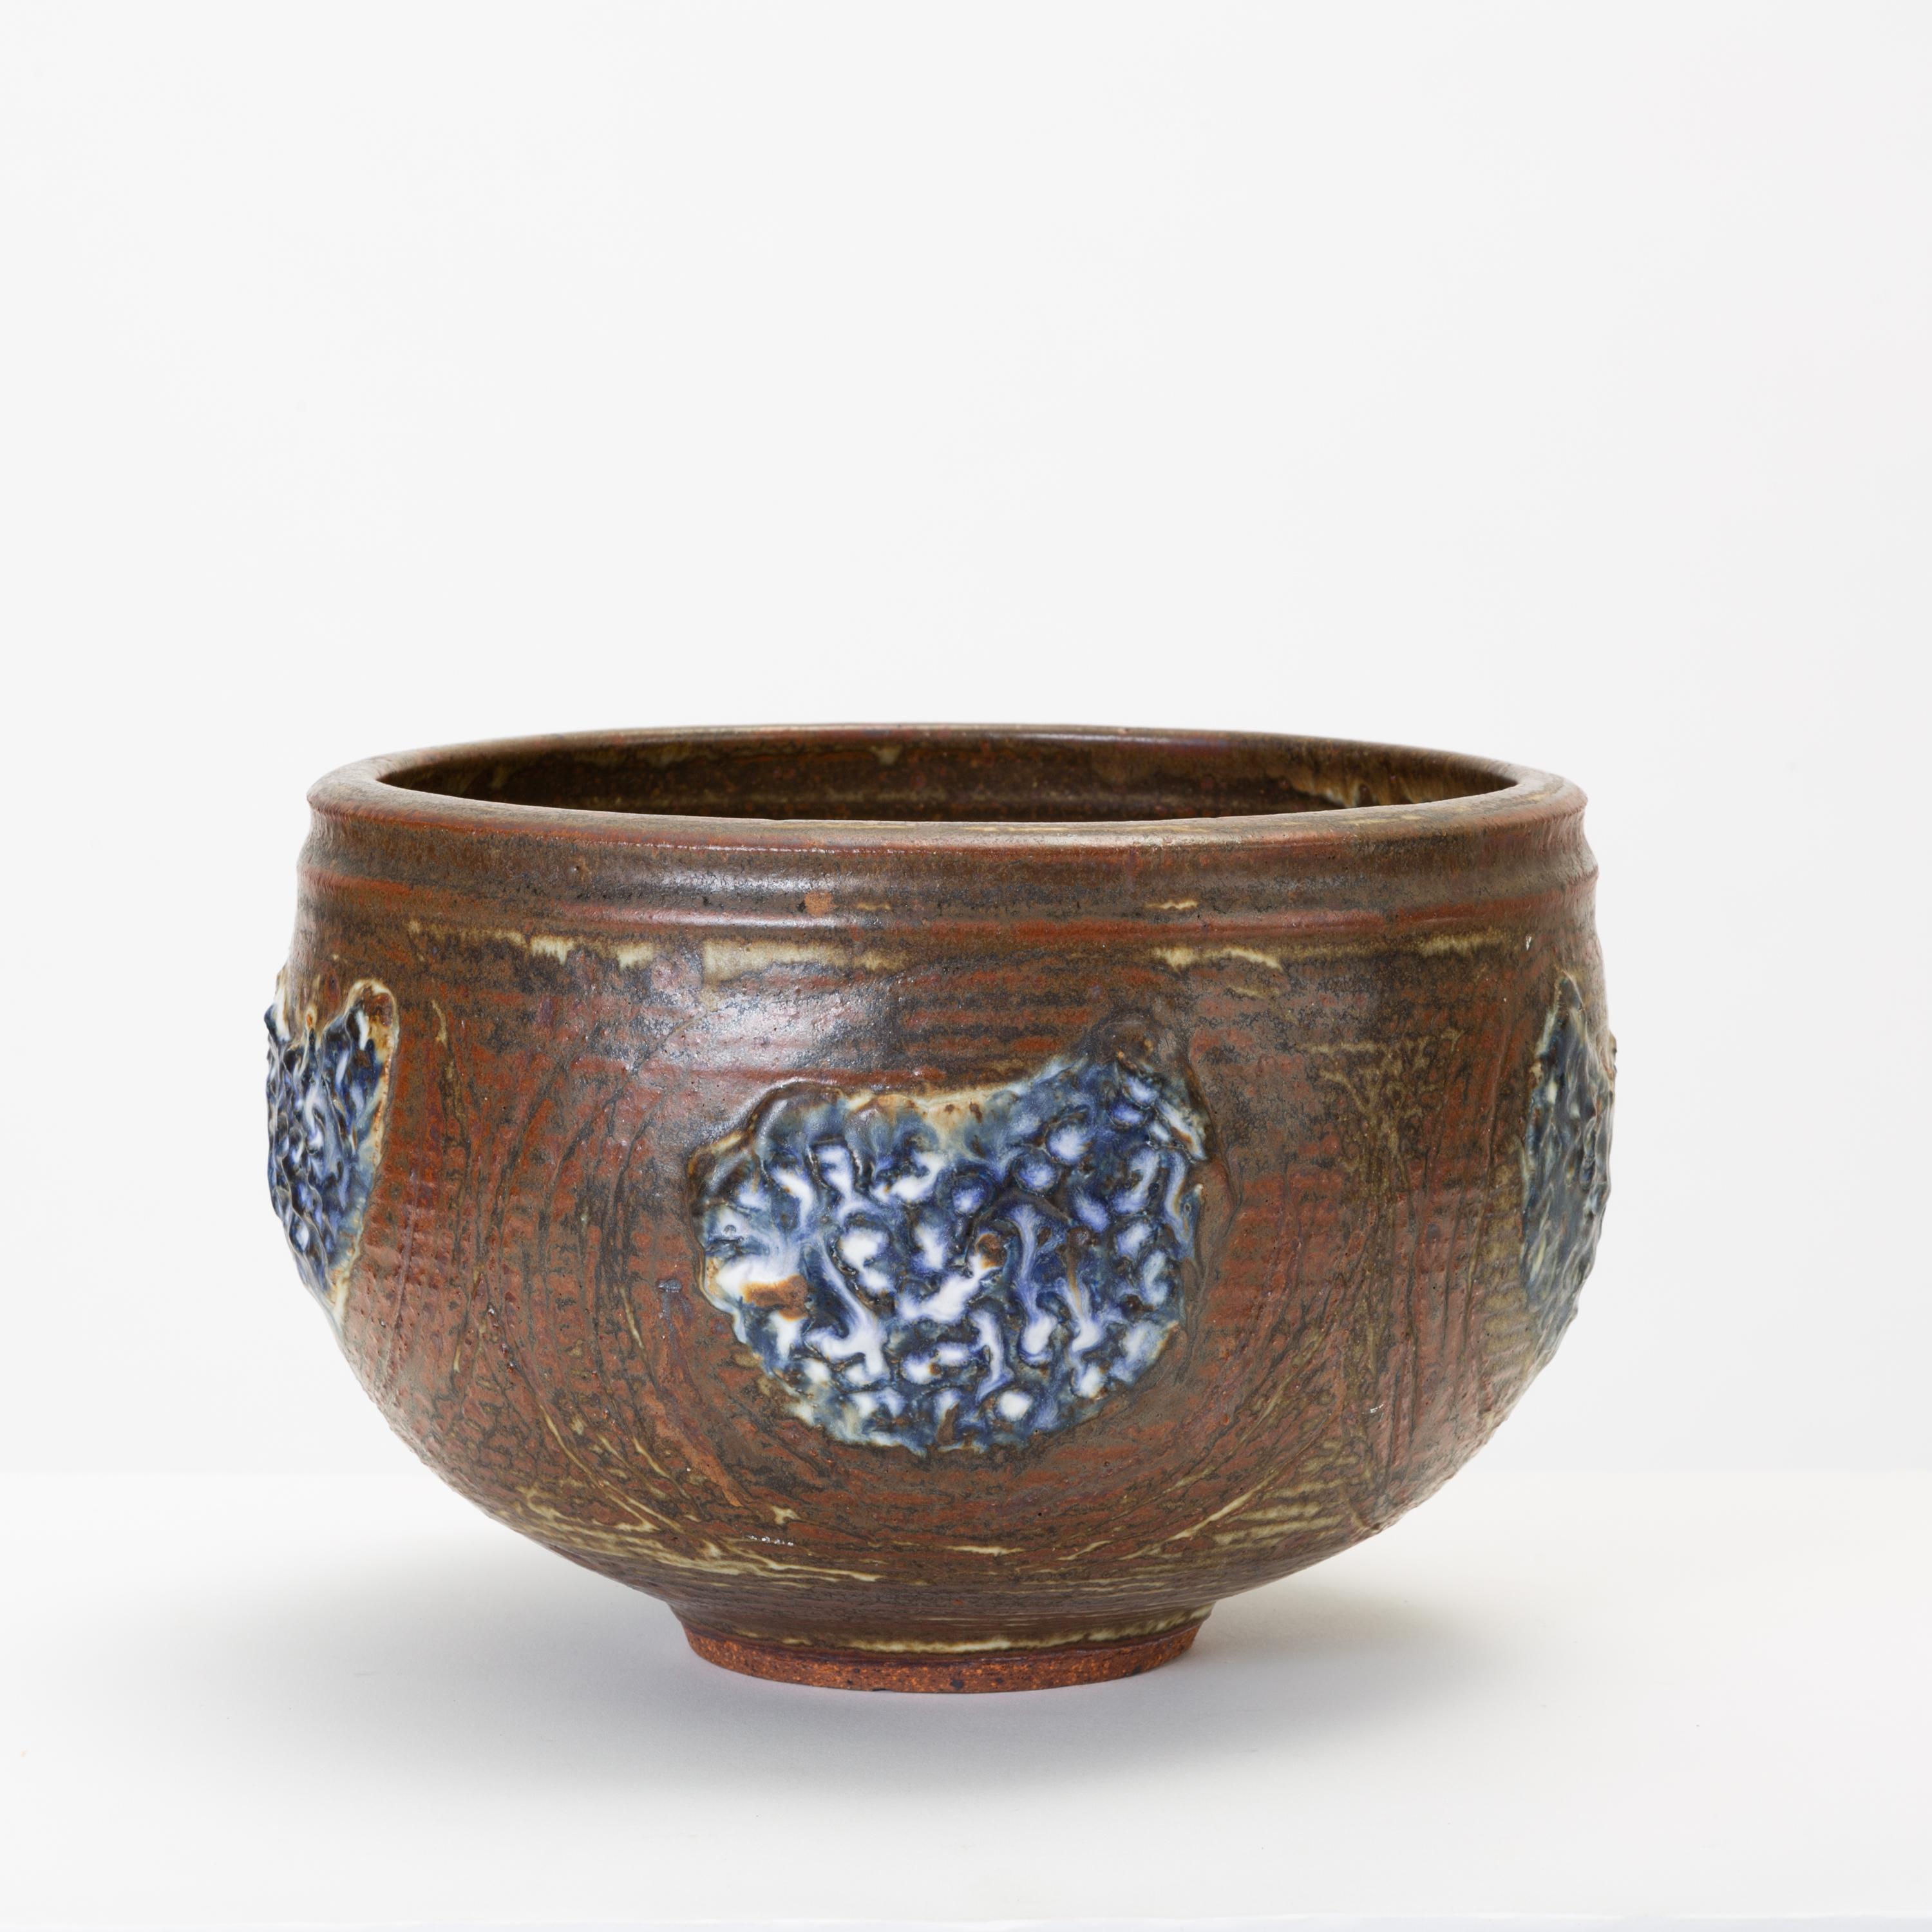 Die große Steinzeugschüssel der modernen Keramiker Vivika und Otto Heino aus Kalifornien ist mit einer unregelmäßigen braunen Glasur und einem applizierten Dekor in einem tiefen Königsblau versehen. Die glasierte Innenseite ist grau und leicht